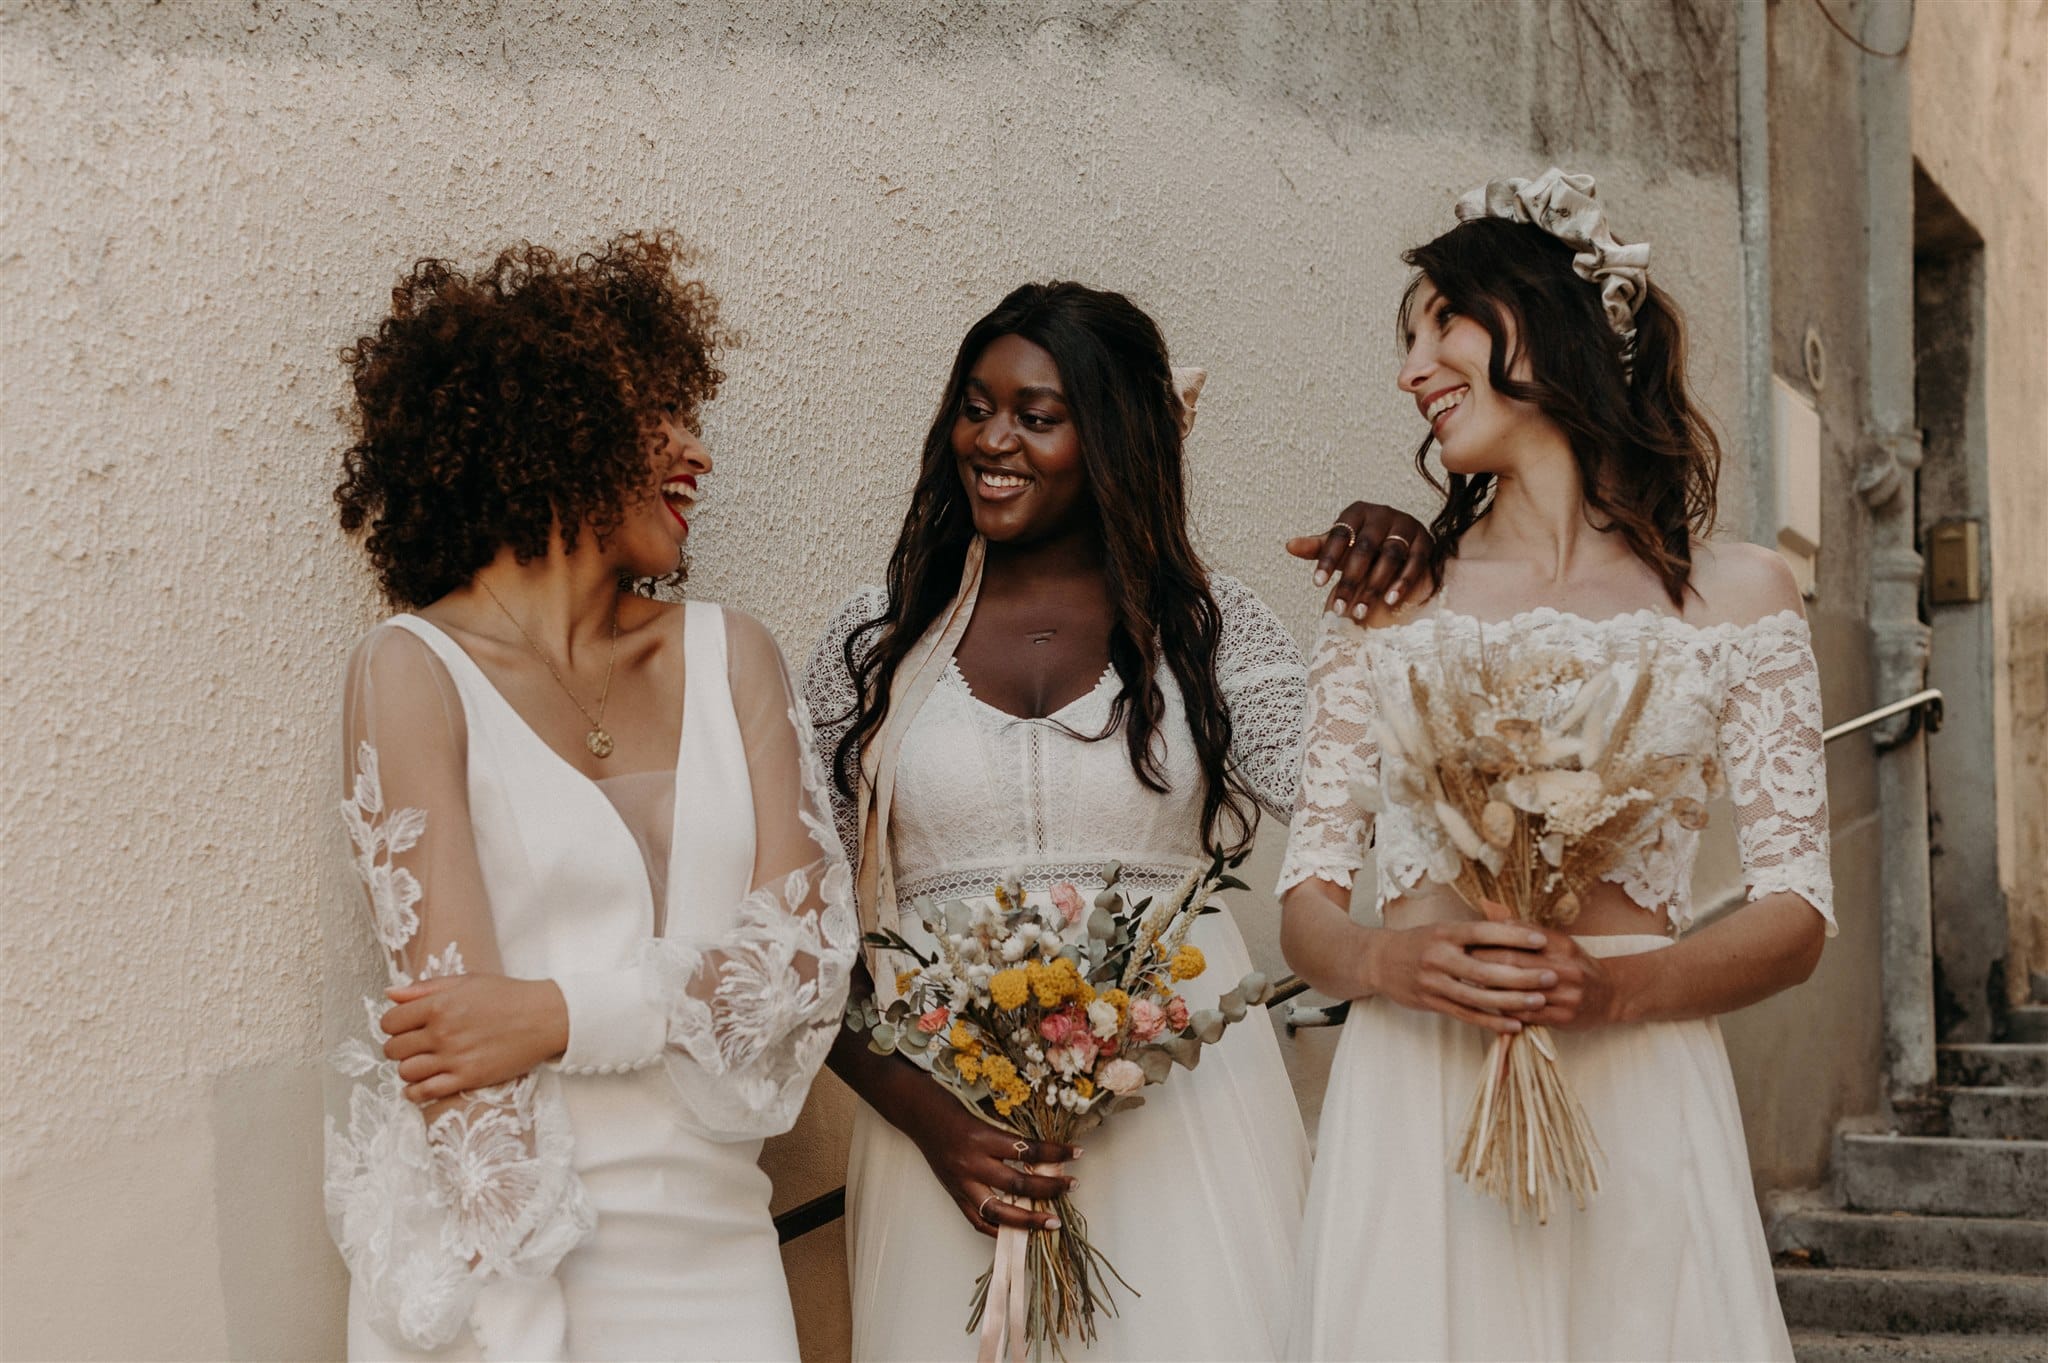 Acheter une robe de mariée de seconde main avec le dépôt vente La Sève - Blog mariage : La mariée aux pieds nus